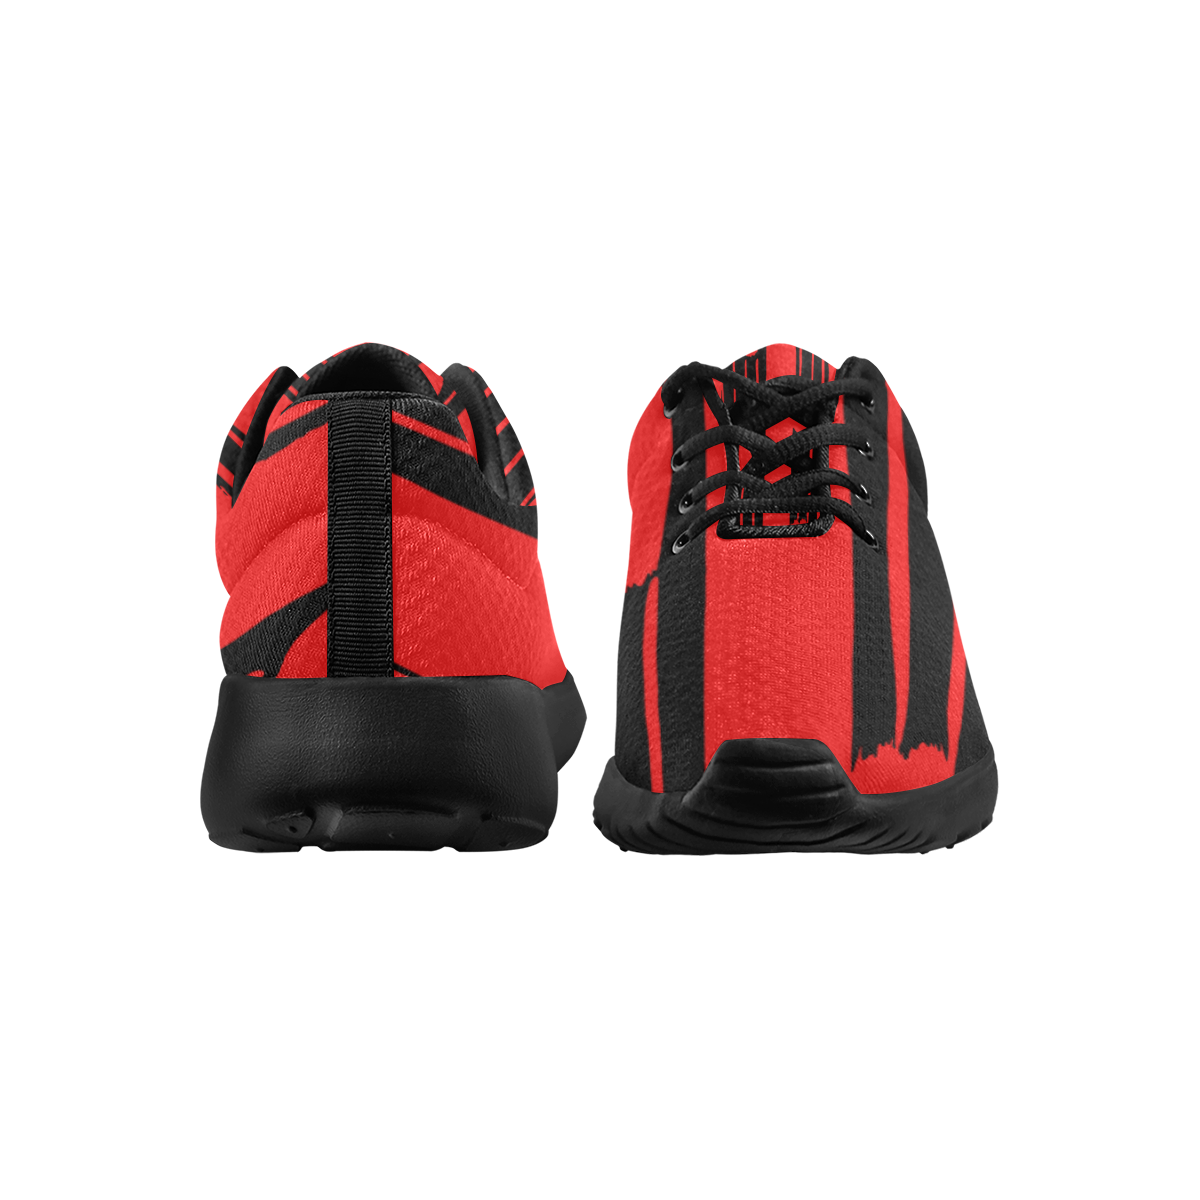 deportivas de mujer patron rojo y negro Women's Athletic Shoes (Model 0200)